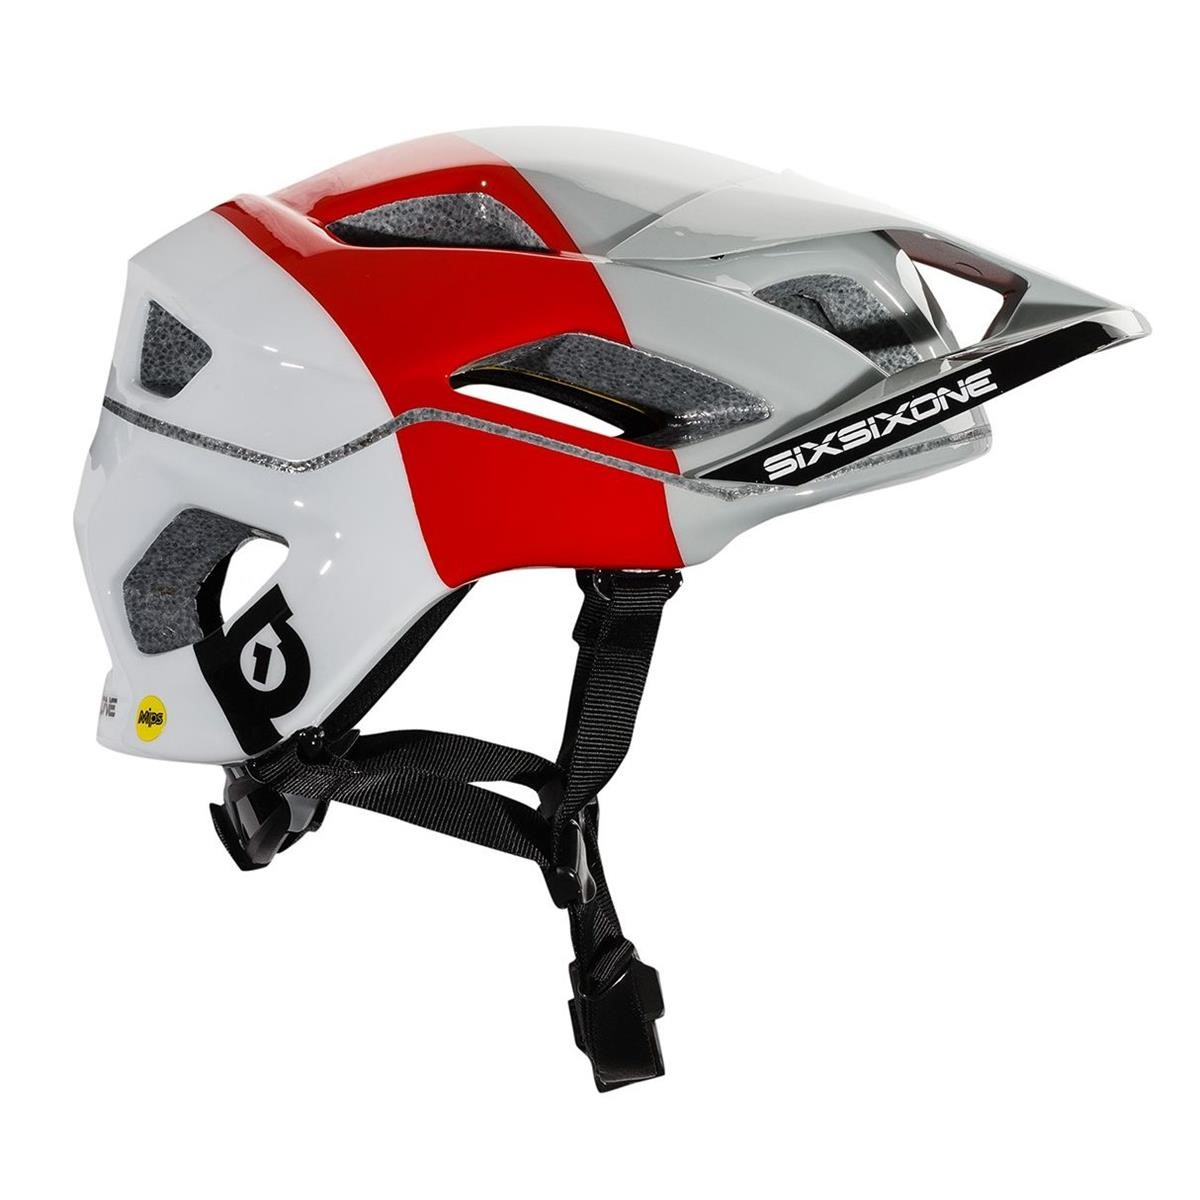 SixSixOne Enduro-MTB Helmet Evo AM MIPS White/Red